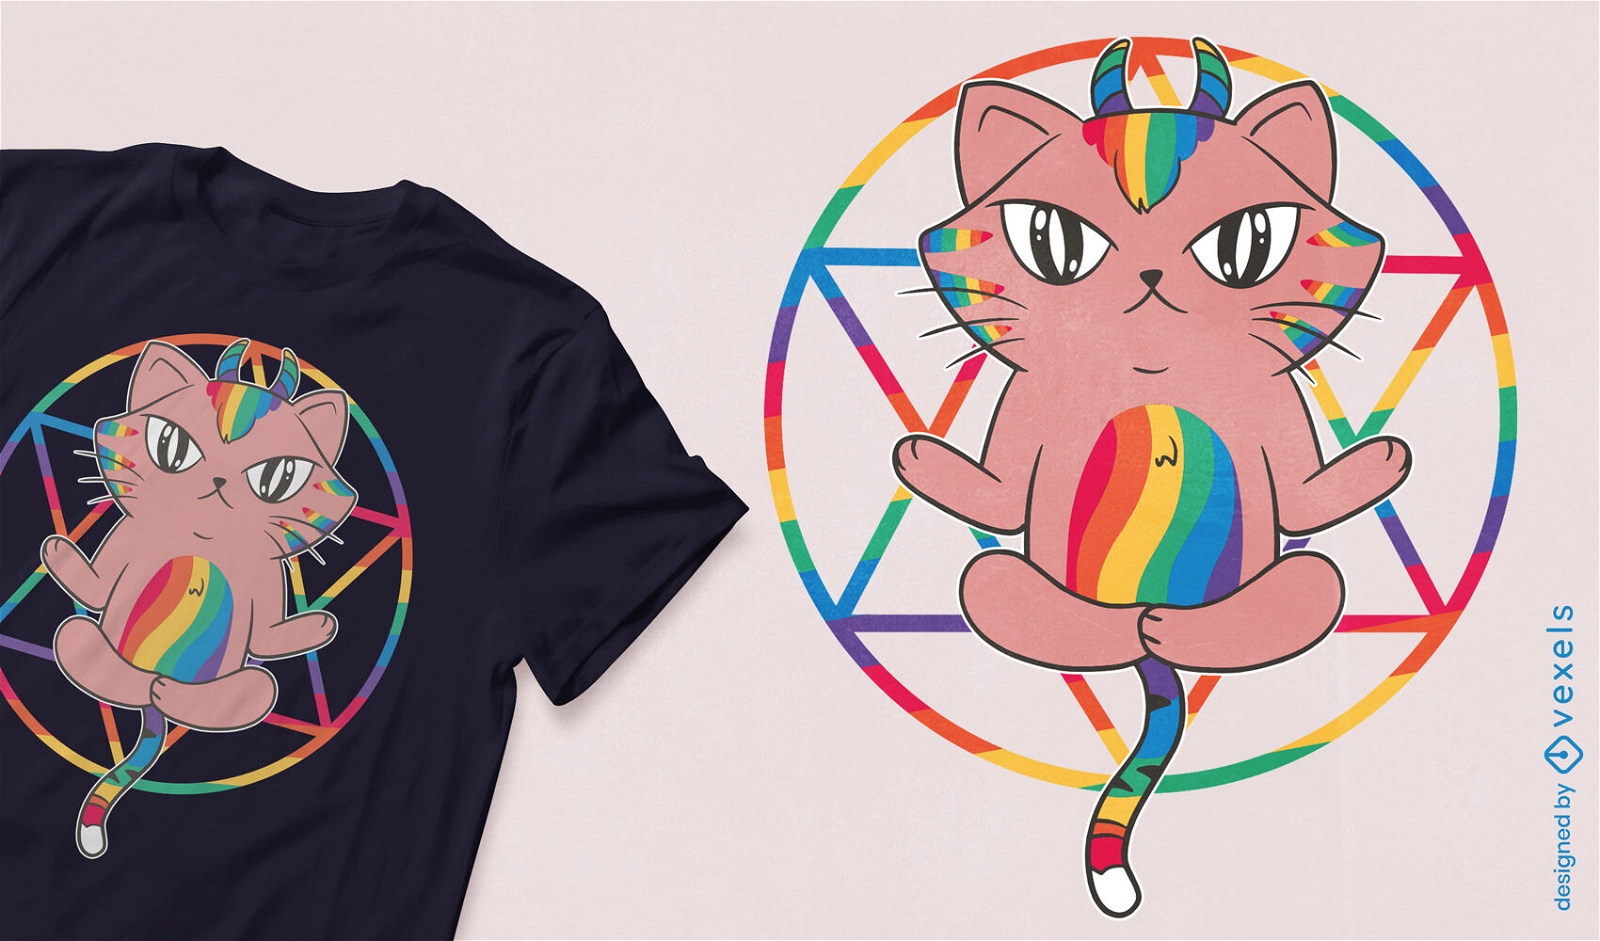 Dise?o de camiseta de gato arco?ris y pentagrama.